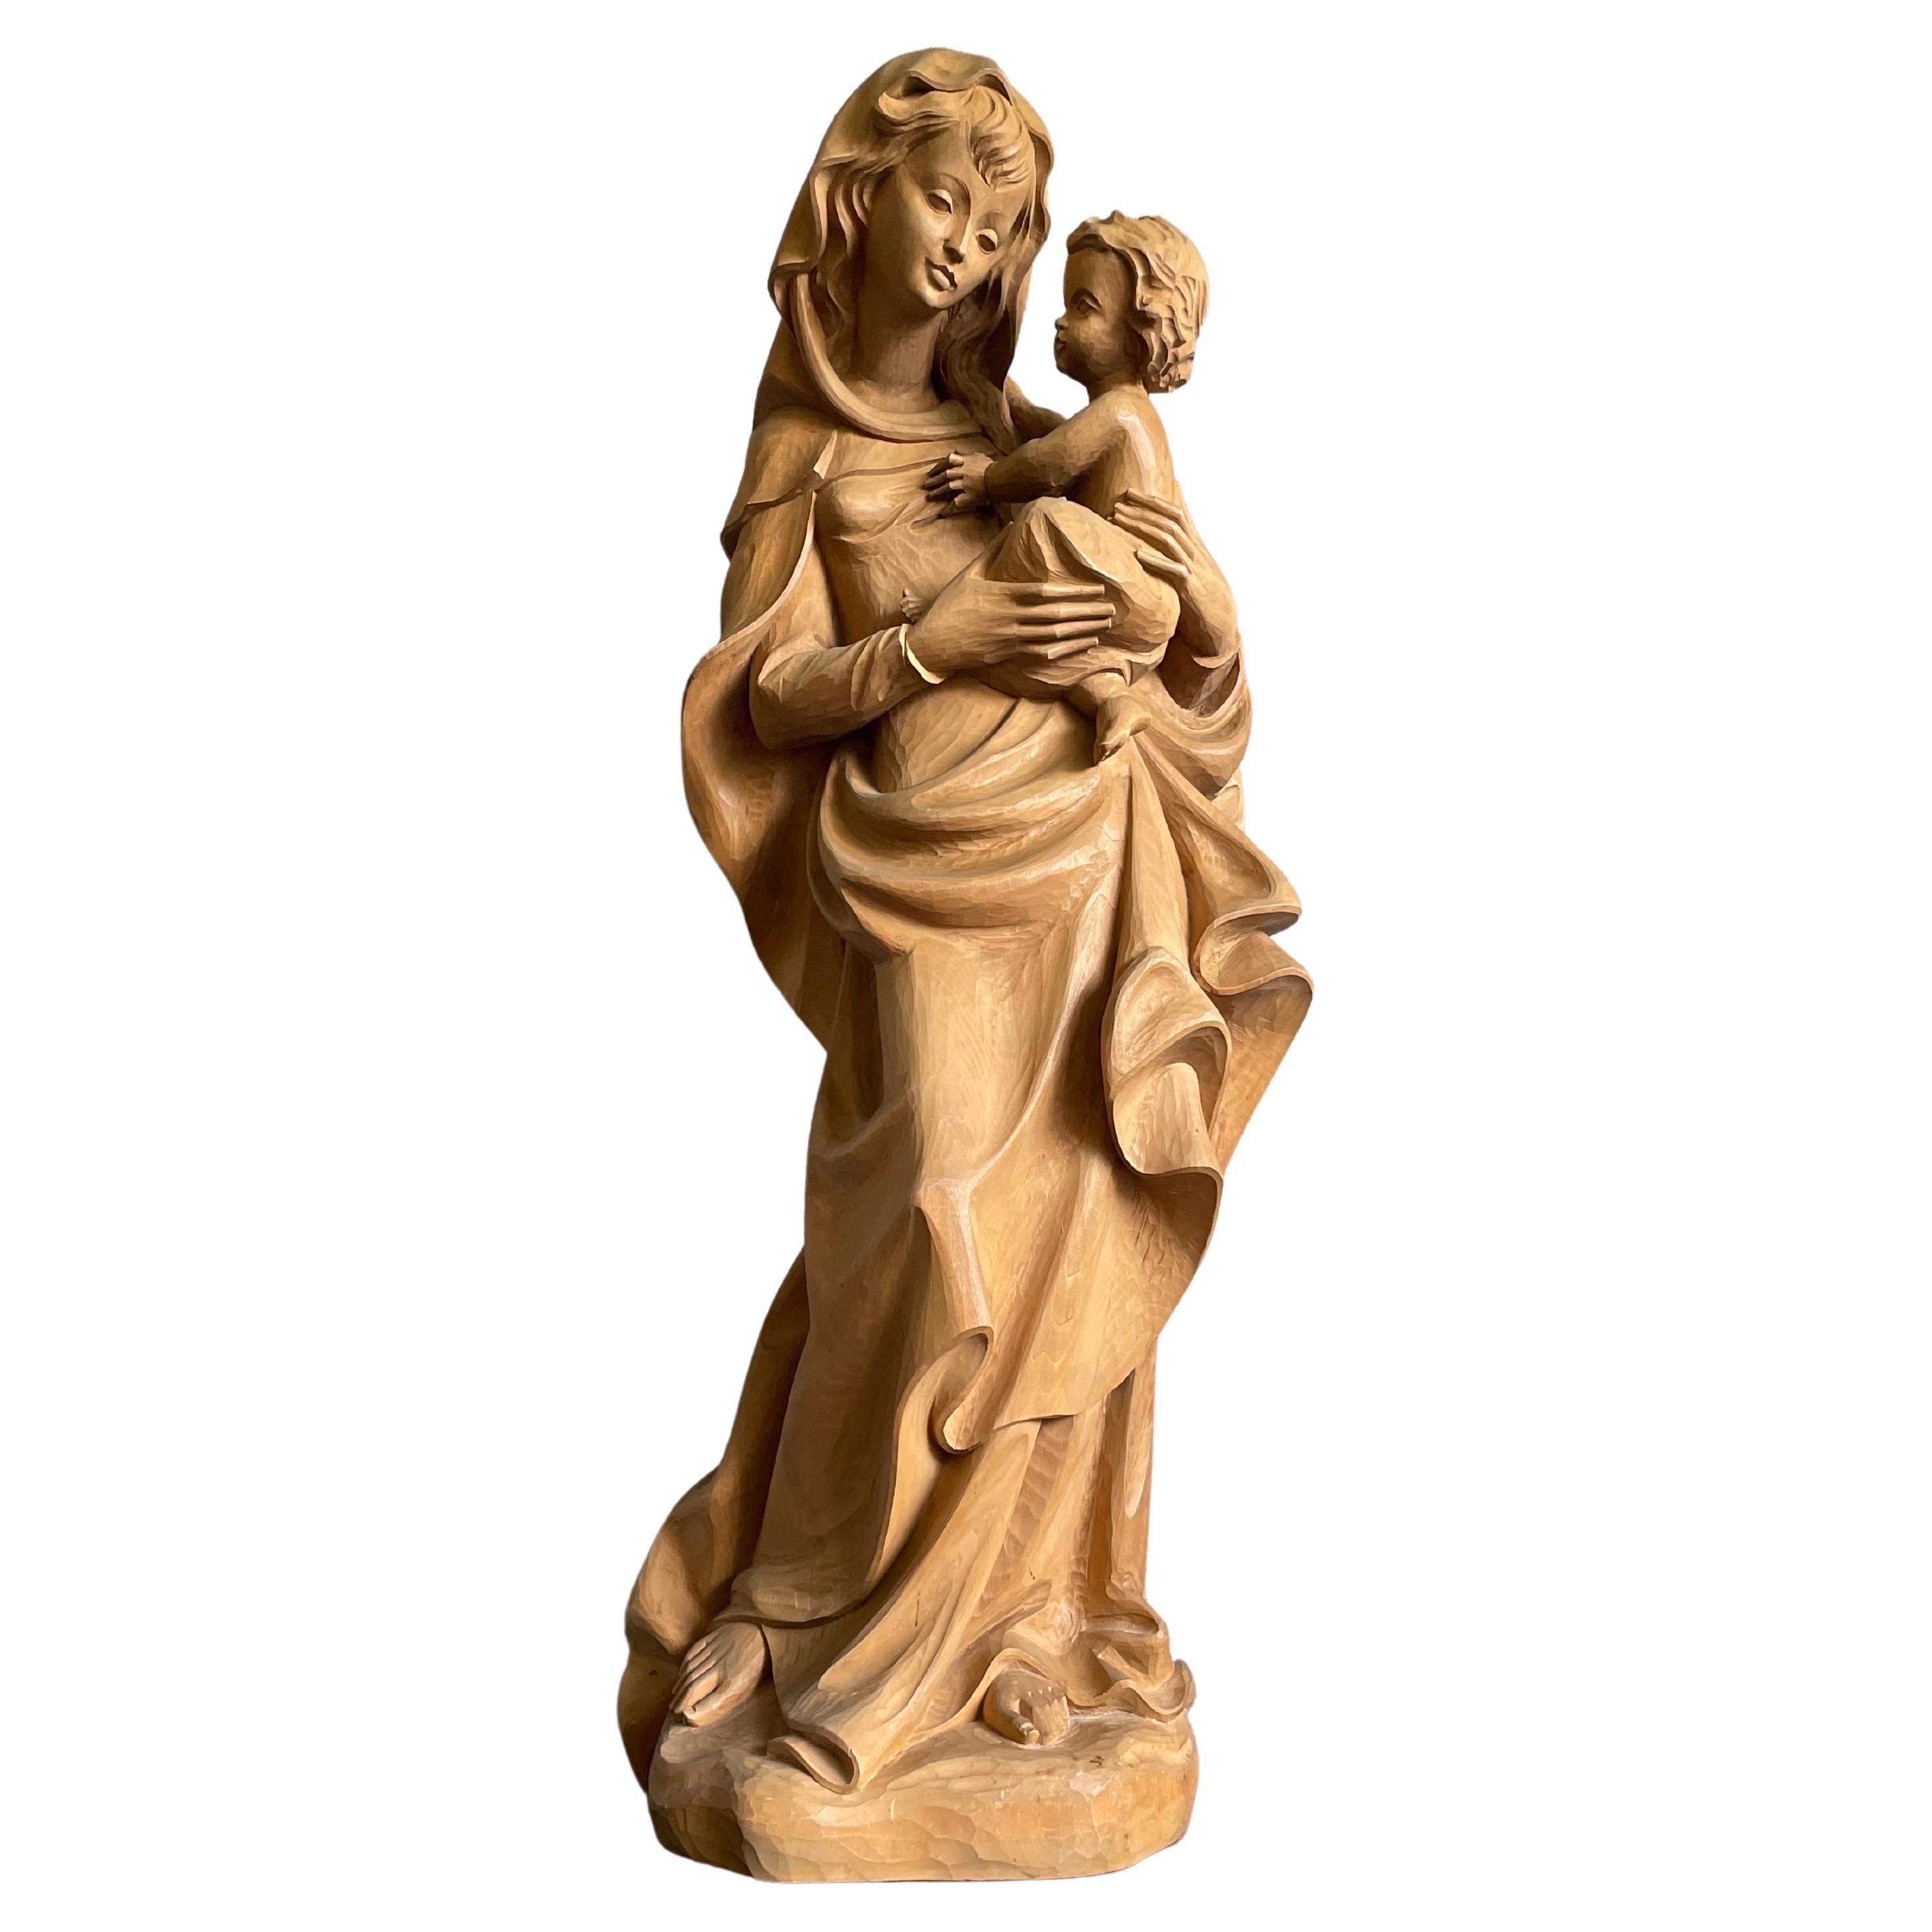 Gran Escultura de Madera Tallada a Mano Estilo Jugendstil de María y el Niño Jesús